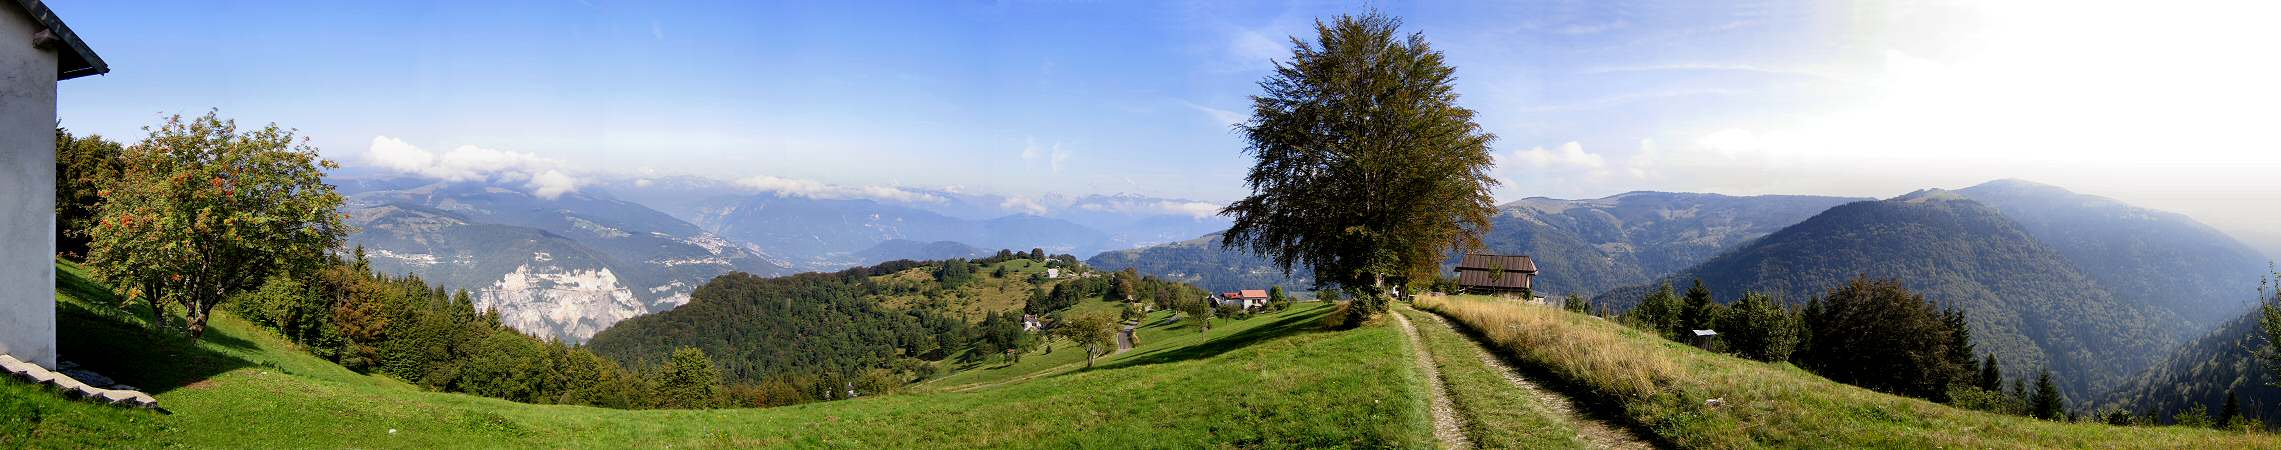 Magnola, dorsale Asolone monte Grappa, fotografia panoramica